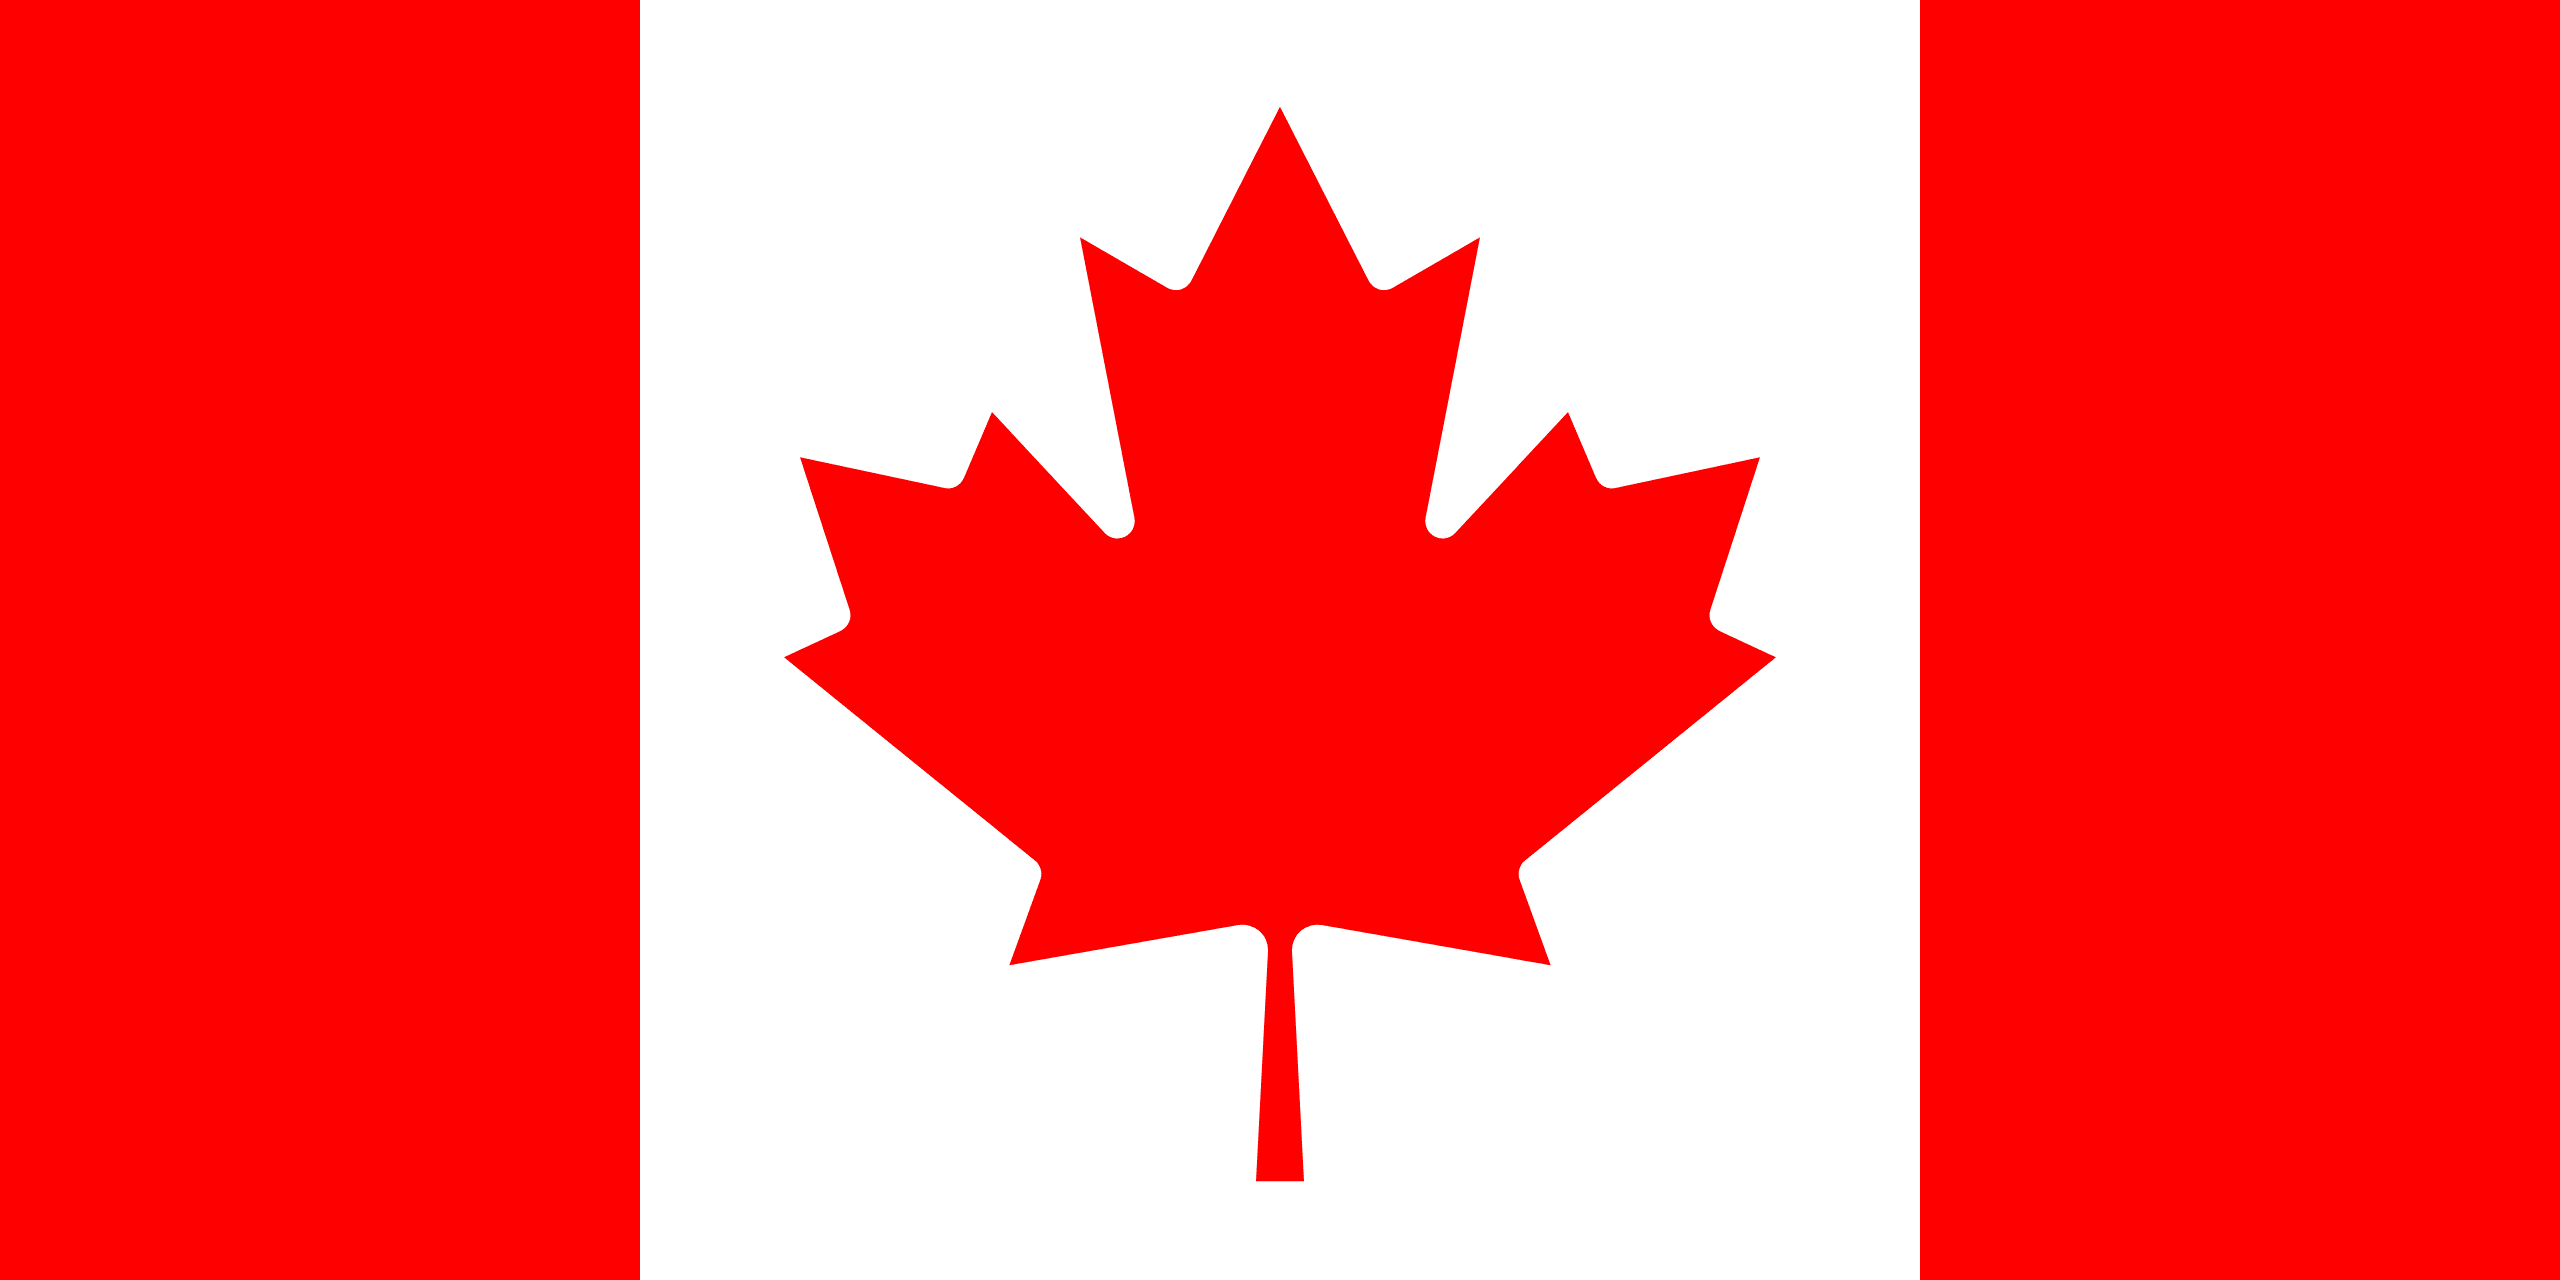 Résultat de recherche d'images pour "drapeau canada"